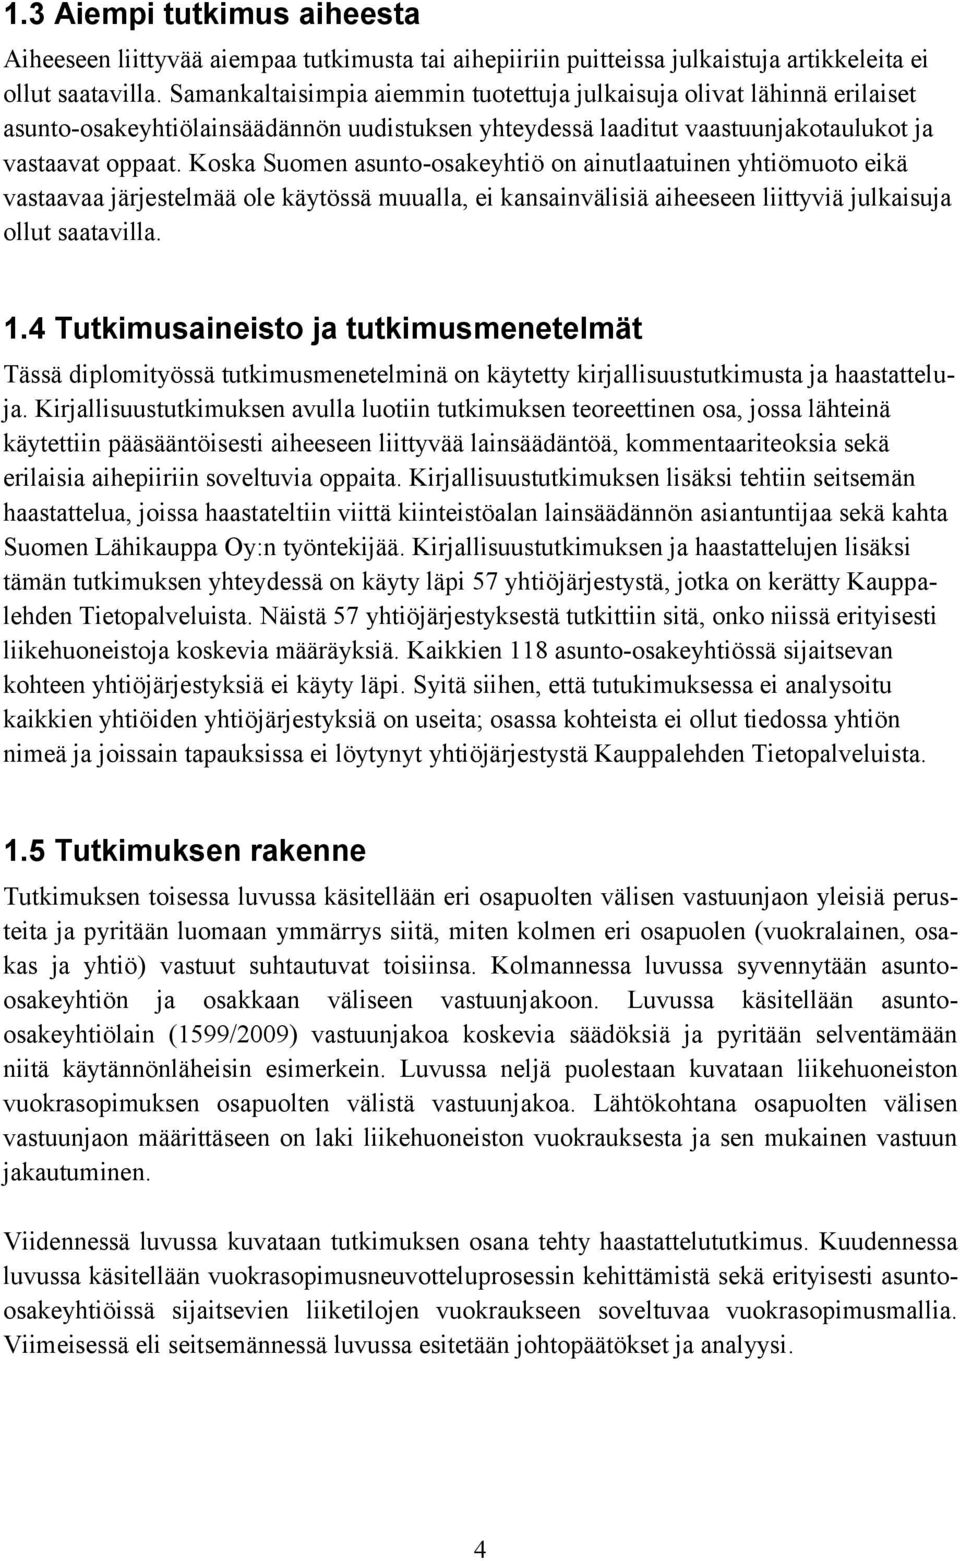 Koska Suomen asunto-osakeyhtiö on ainutlaatuinen yhtiömuoto eikä vastaavaa järjestelmää ole käytössä muualla, ei kansainvälisiä aiheeseen liittyviä julkaisuja ollut saatavilla. 1.